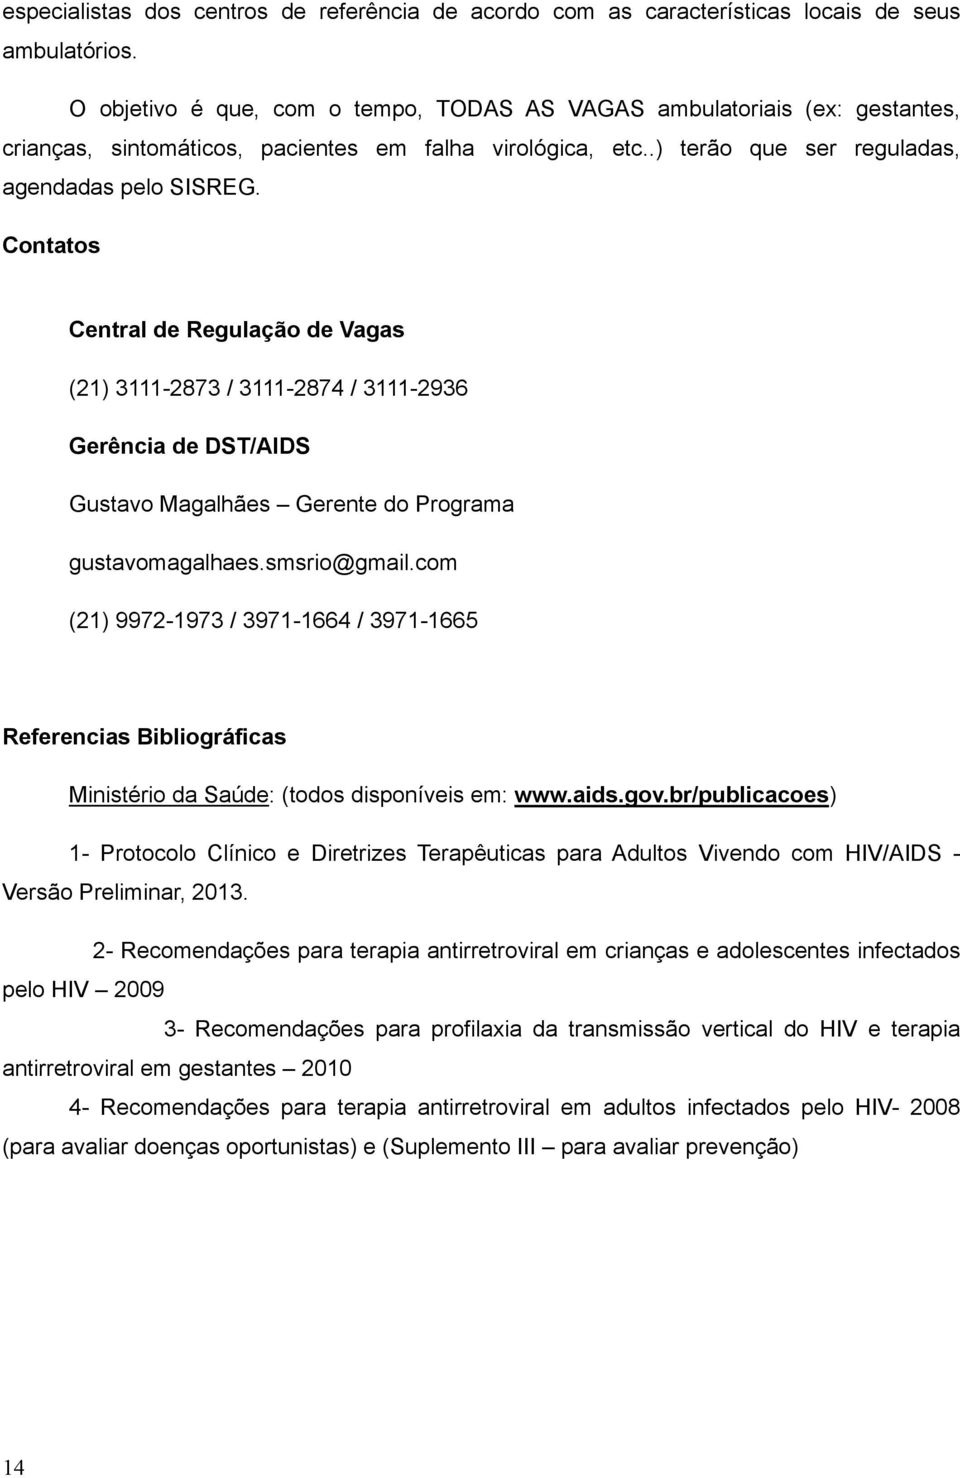 Contatos Central de Regulação de Vagas (21) 3111-2873 / 3111-2874 / 3111-2936 Gerência de DST/AIDS Gustavo Magalhães Gerente do Programa gustavomagalhaes.smsrio@gmail.